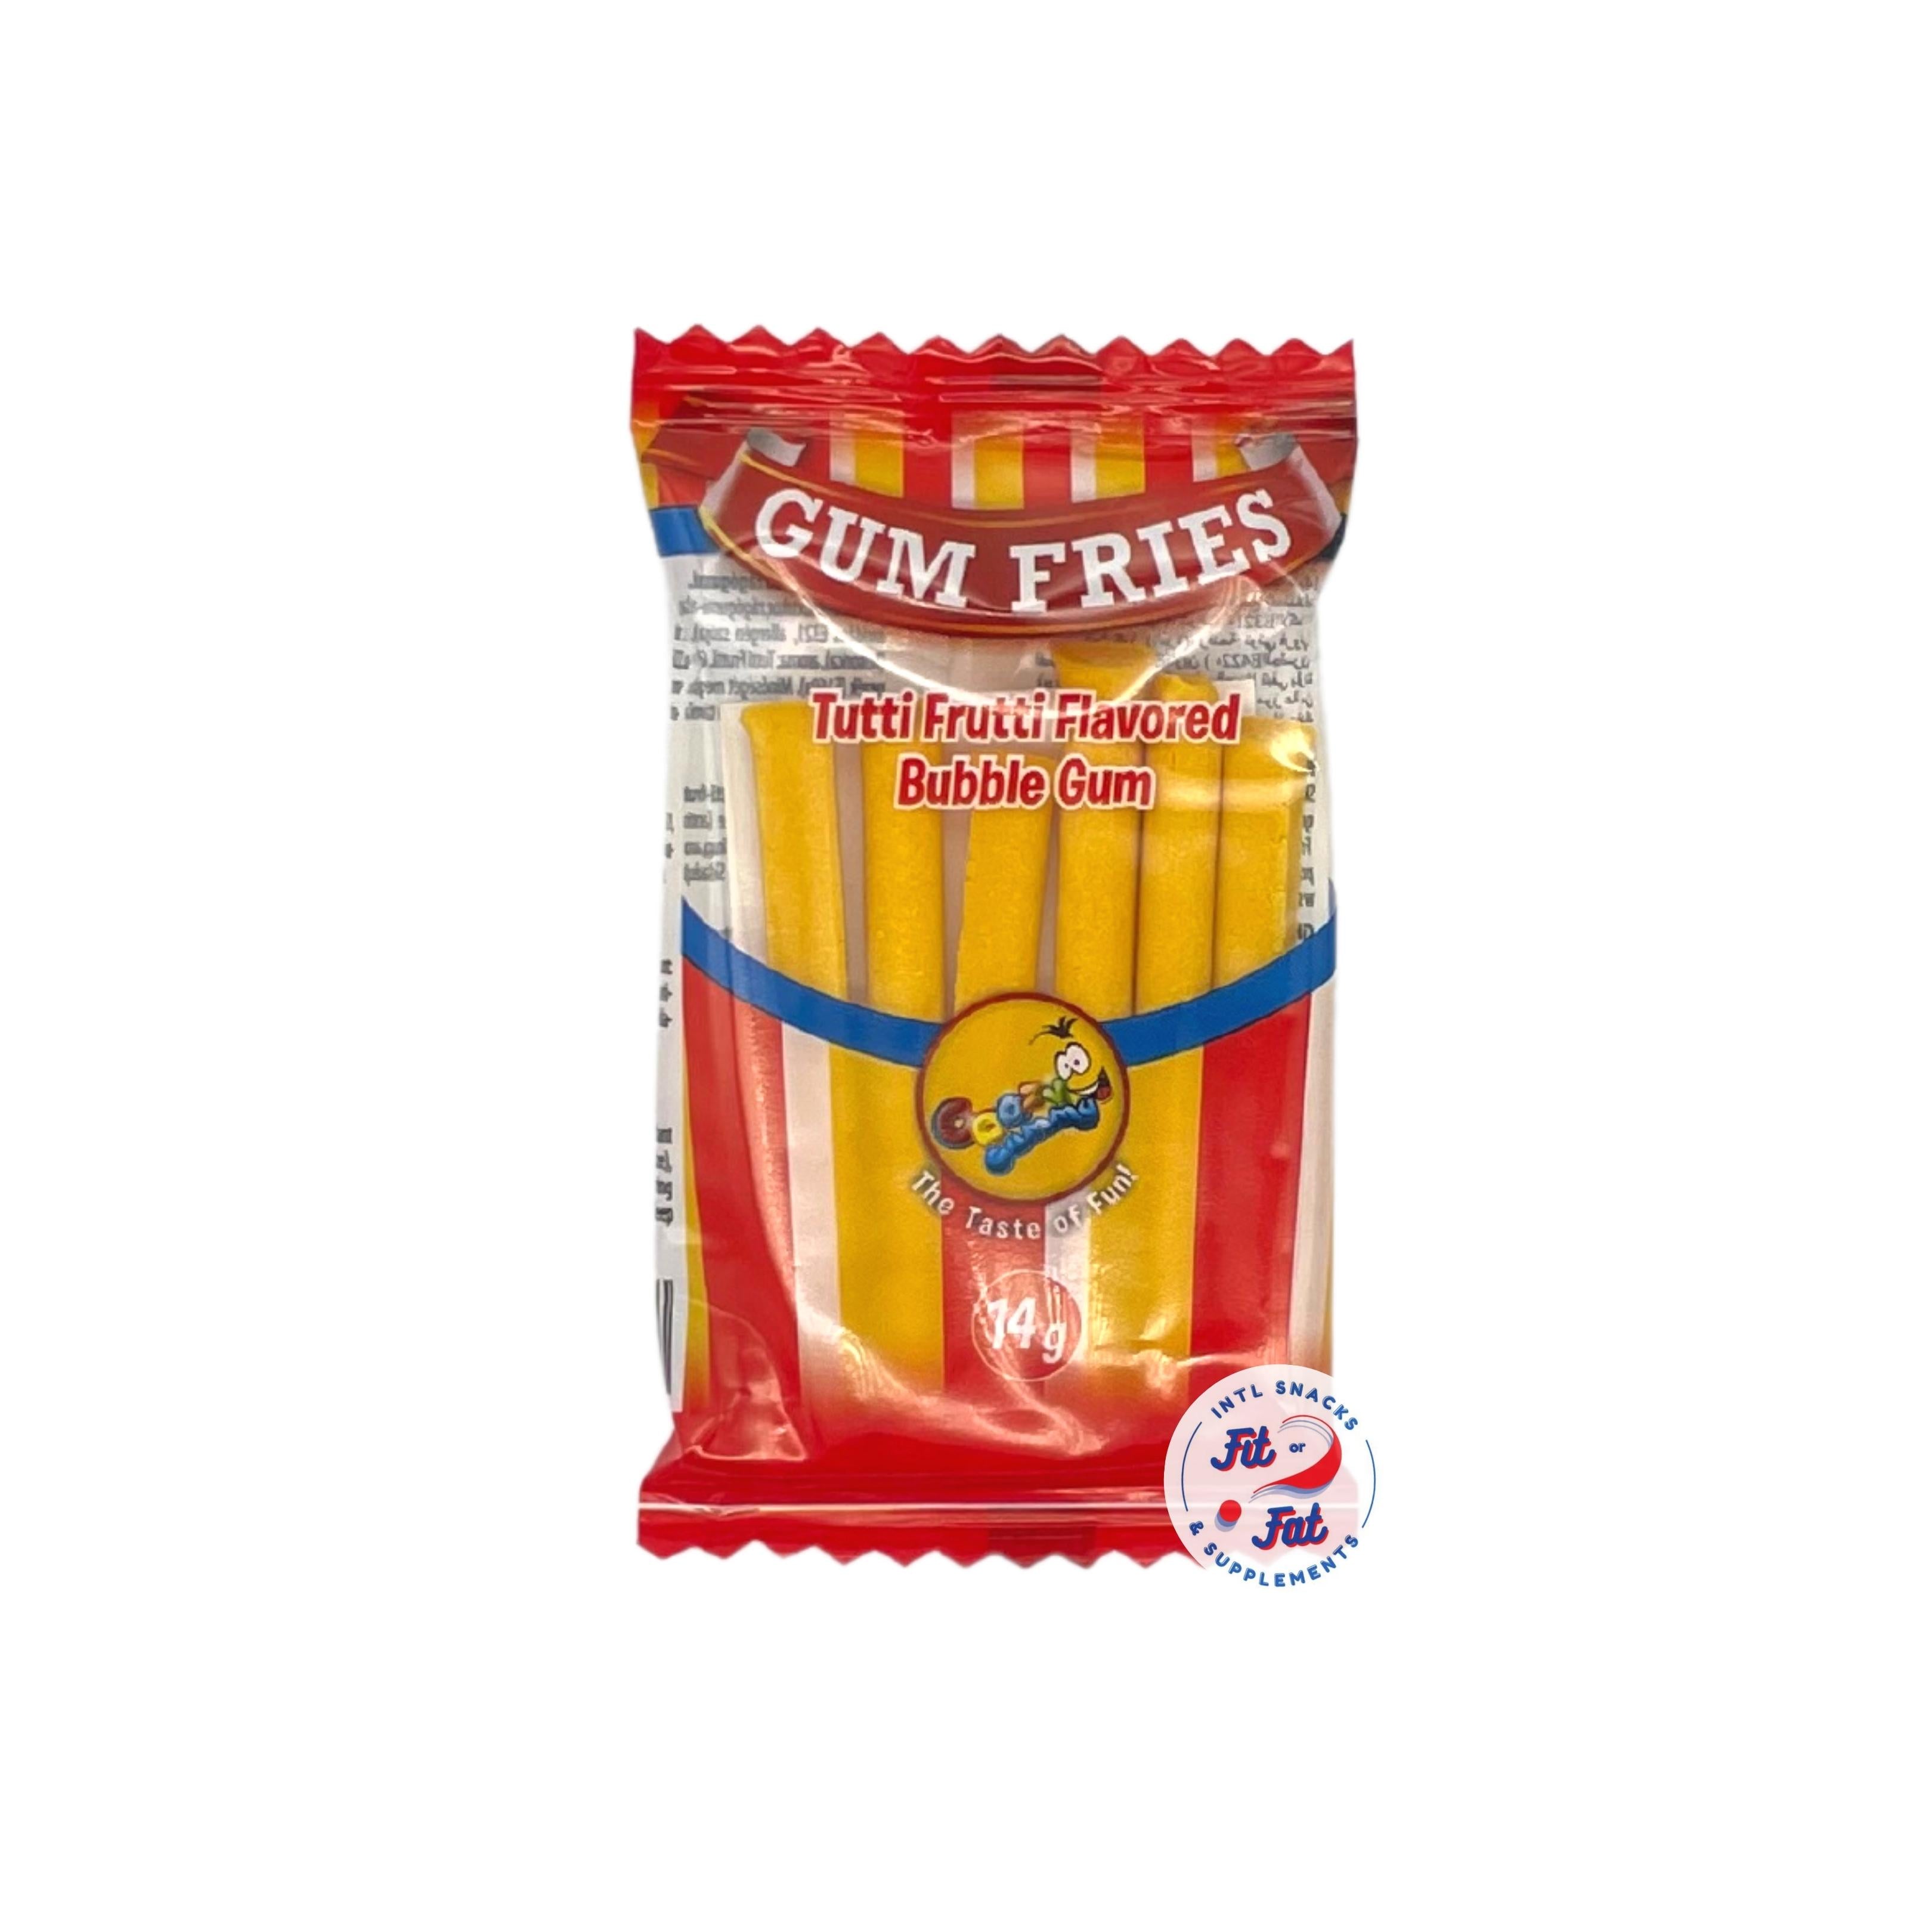 Gum Fries Tutti Frutti Flavored